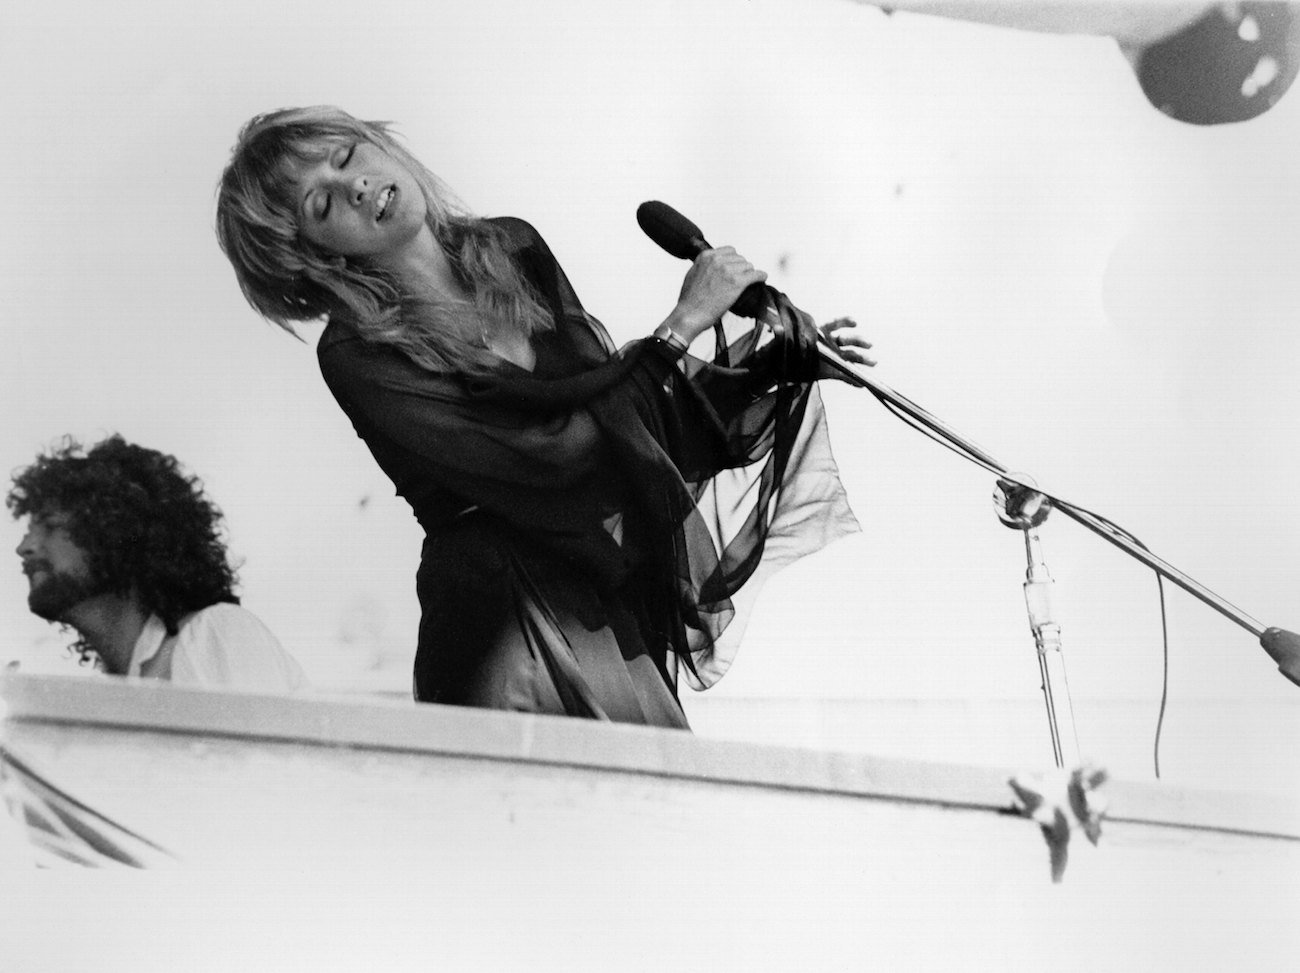 Stevie Nicks performing in black with Fleetwood Mac in California, 1977.